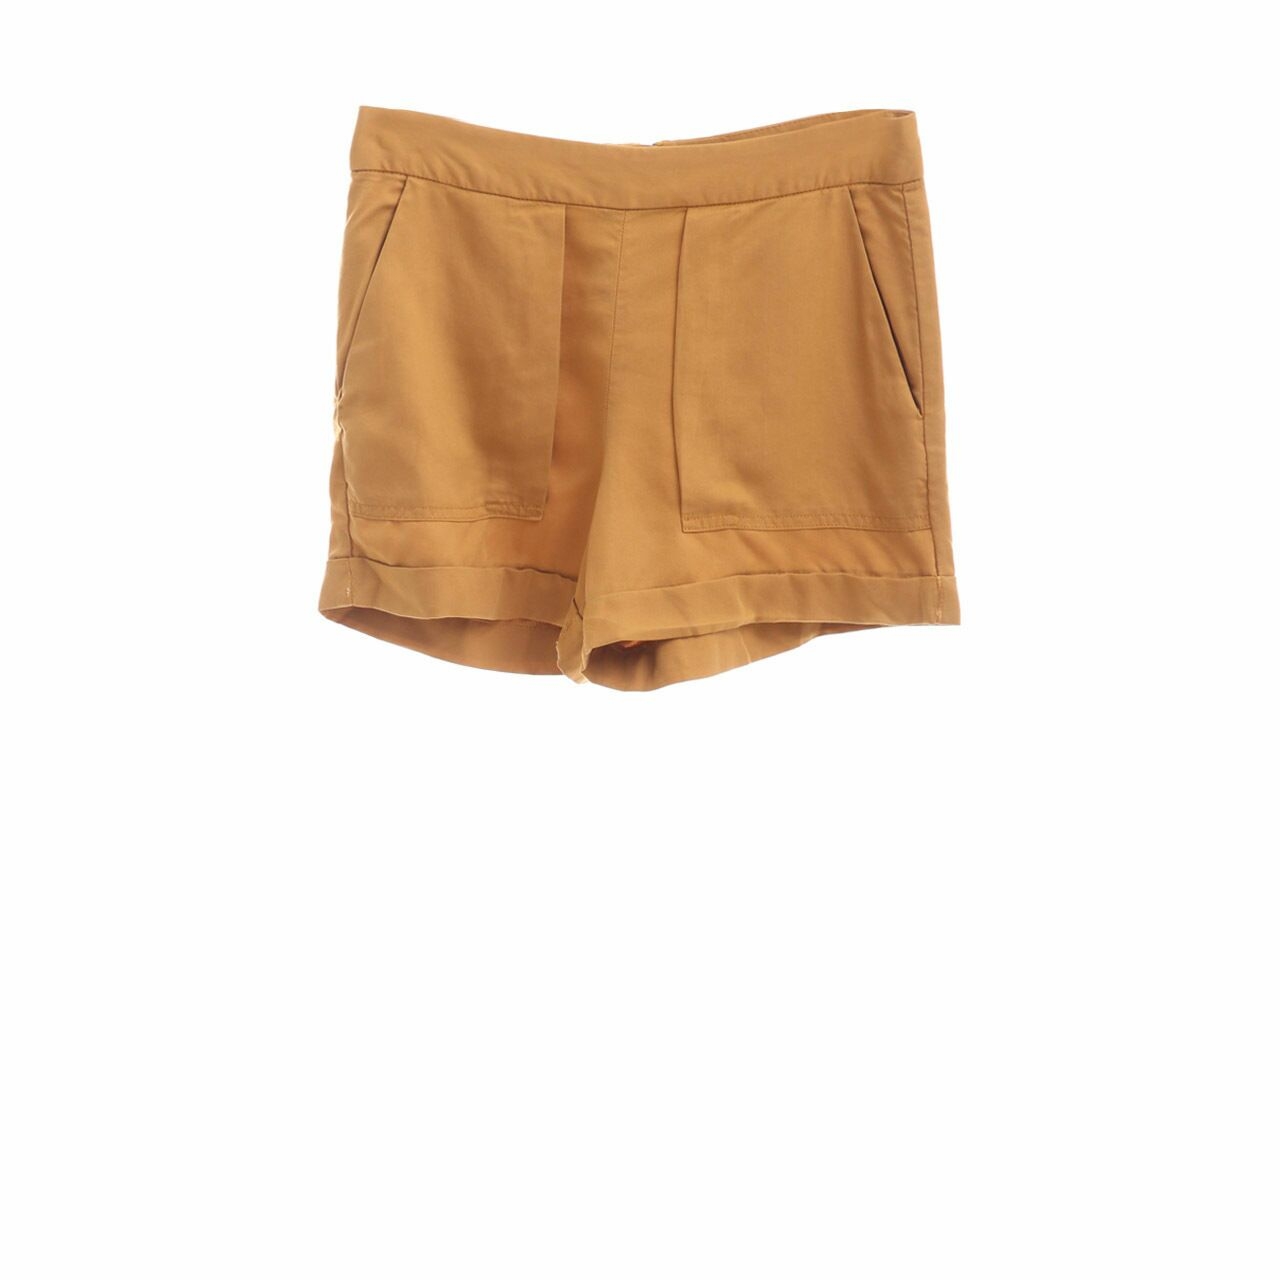 Zara Mustard Short Pants